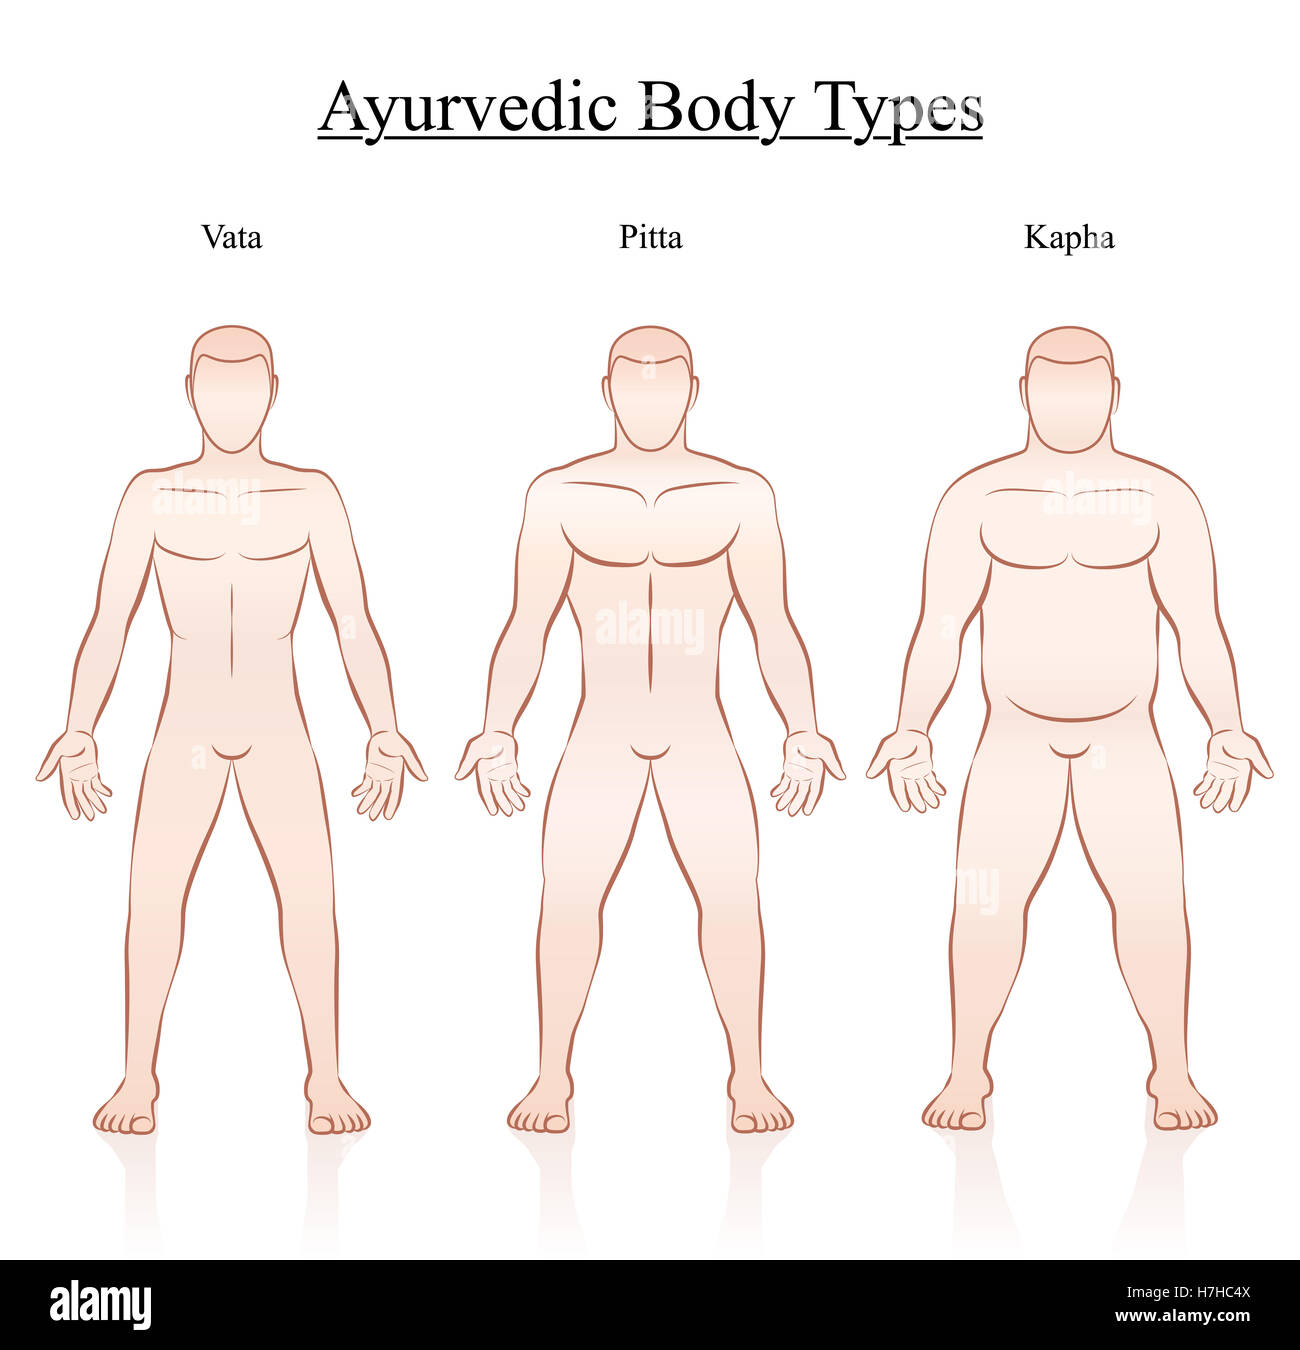 Corpo ayurvedico tipi di costituzione - vata, pitta e kapha. Profilo illustrazione di tre uomini con differenti anatomia. Foto Stock